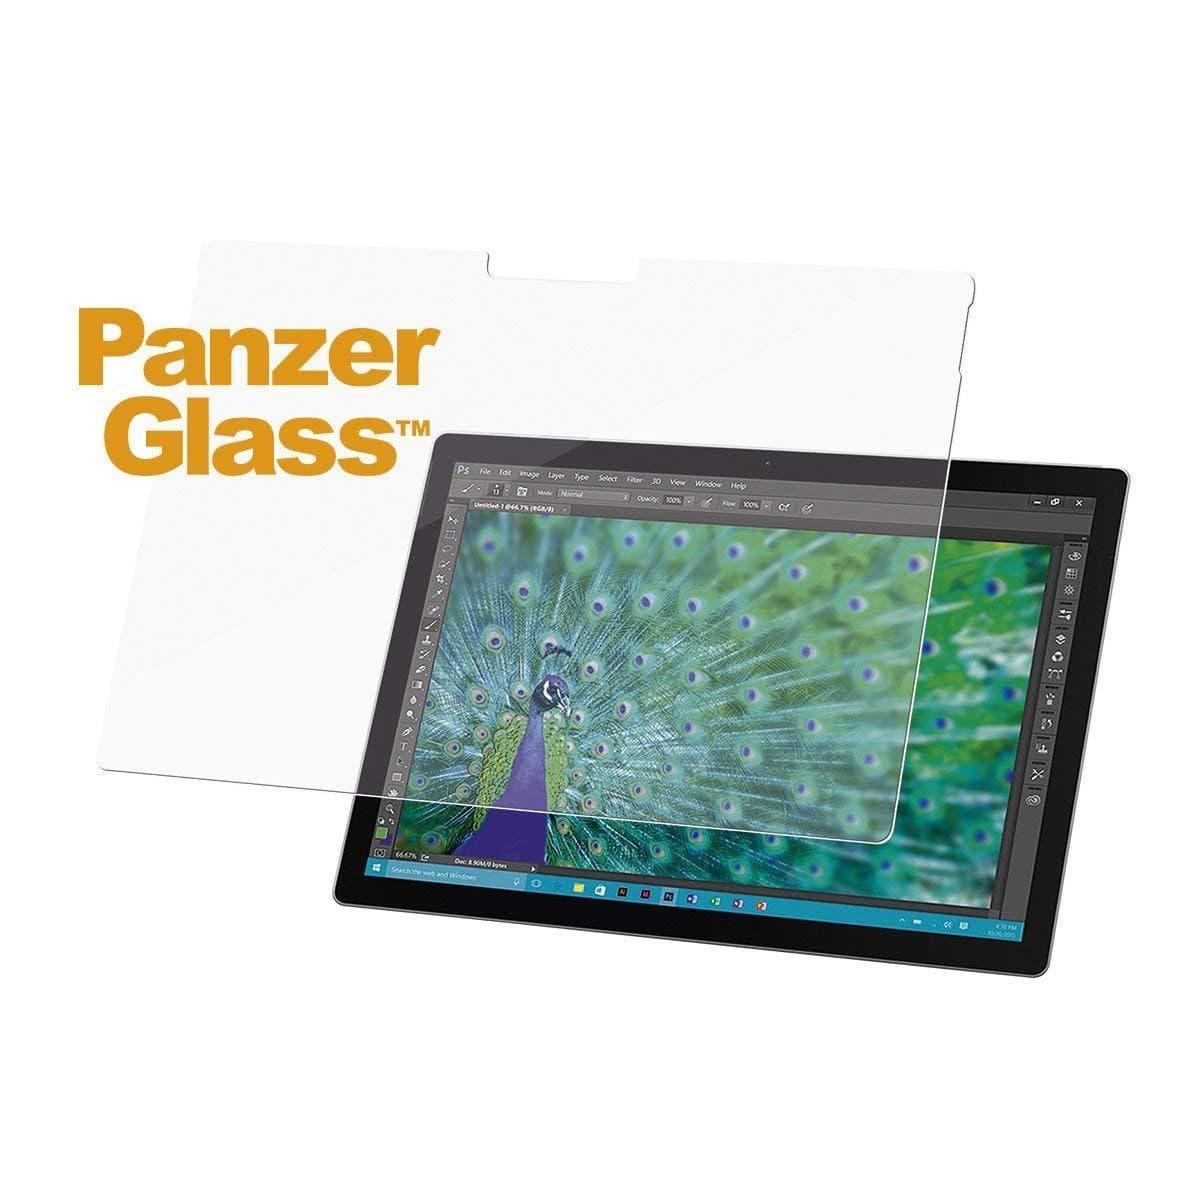 لاصقة حماية لجهاز Microsoft Surface Book قياس 13.5 بوصة Panzer Glass Tempered Glass Screen Protector for Microsoft Surface Book